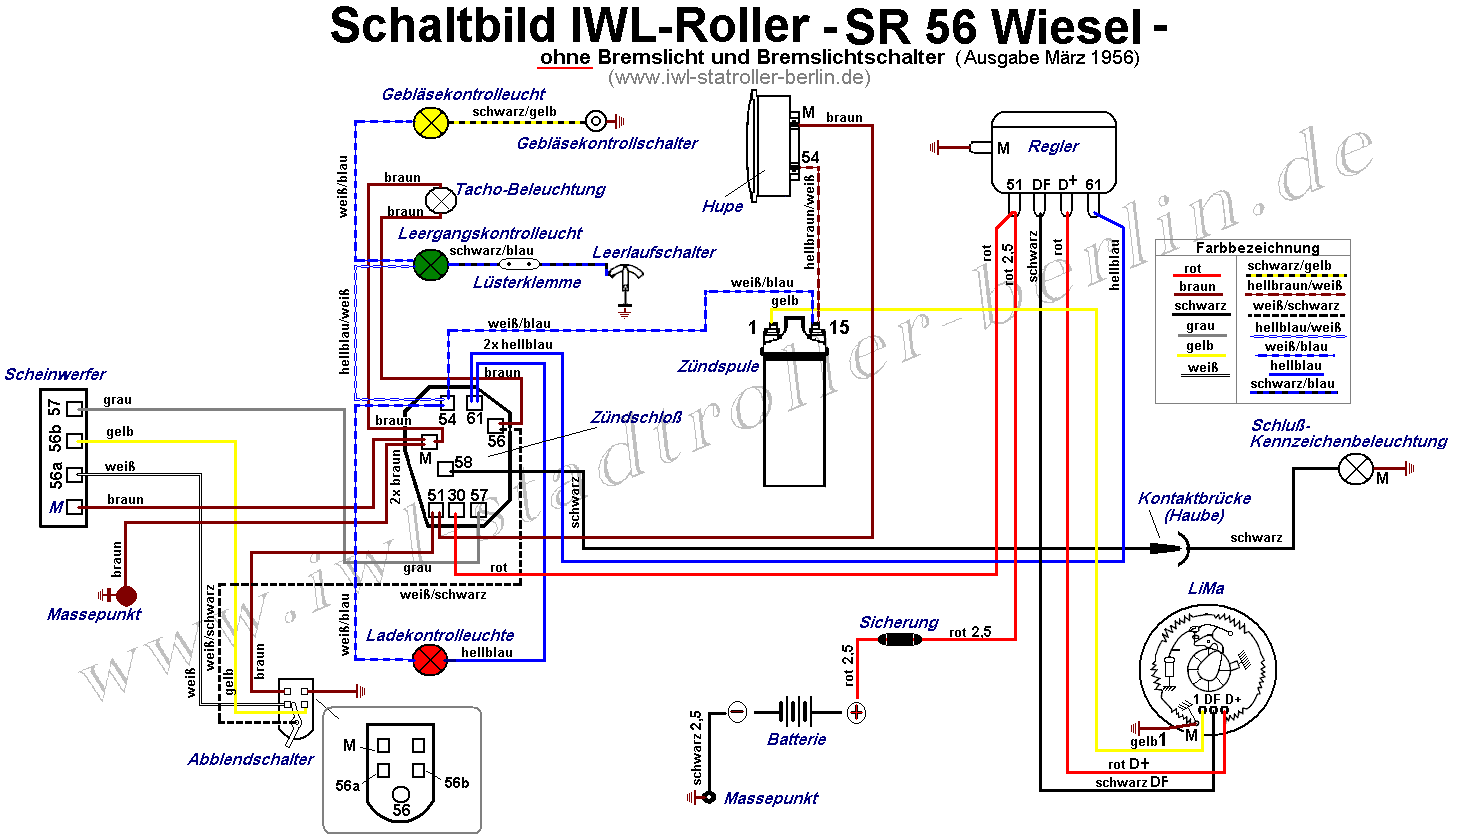  Schaltbild SR 56 Wiesel 1956 